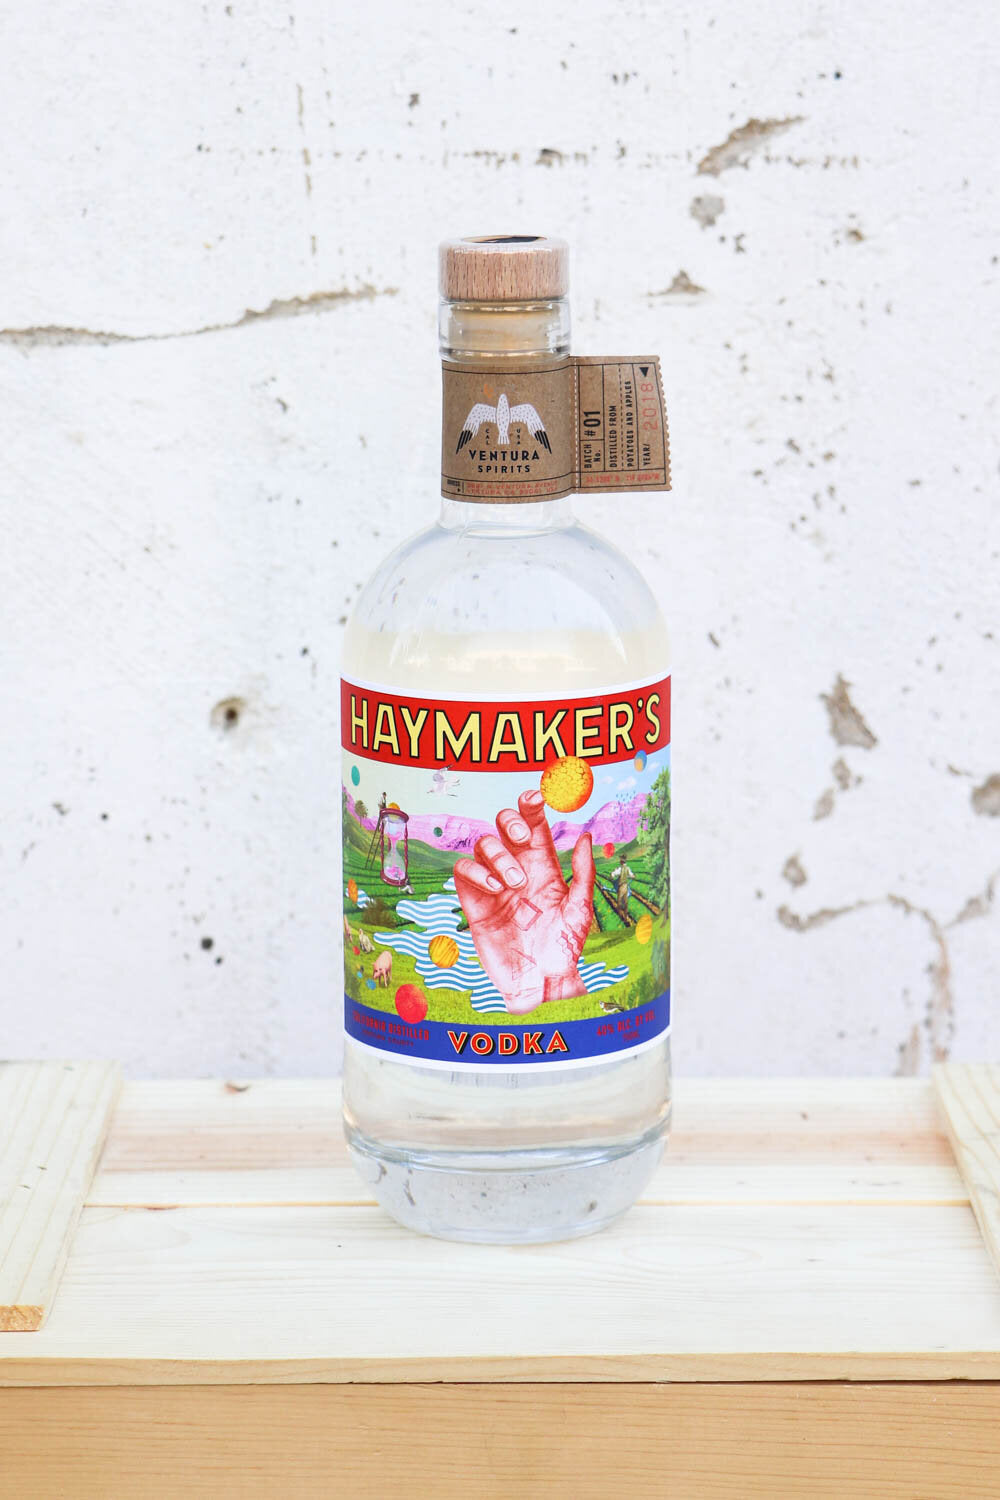 Haymaker's Vodka